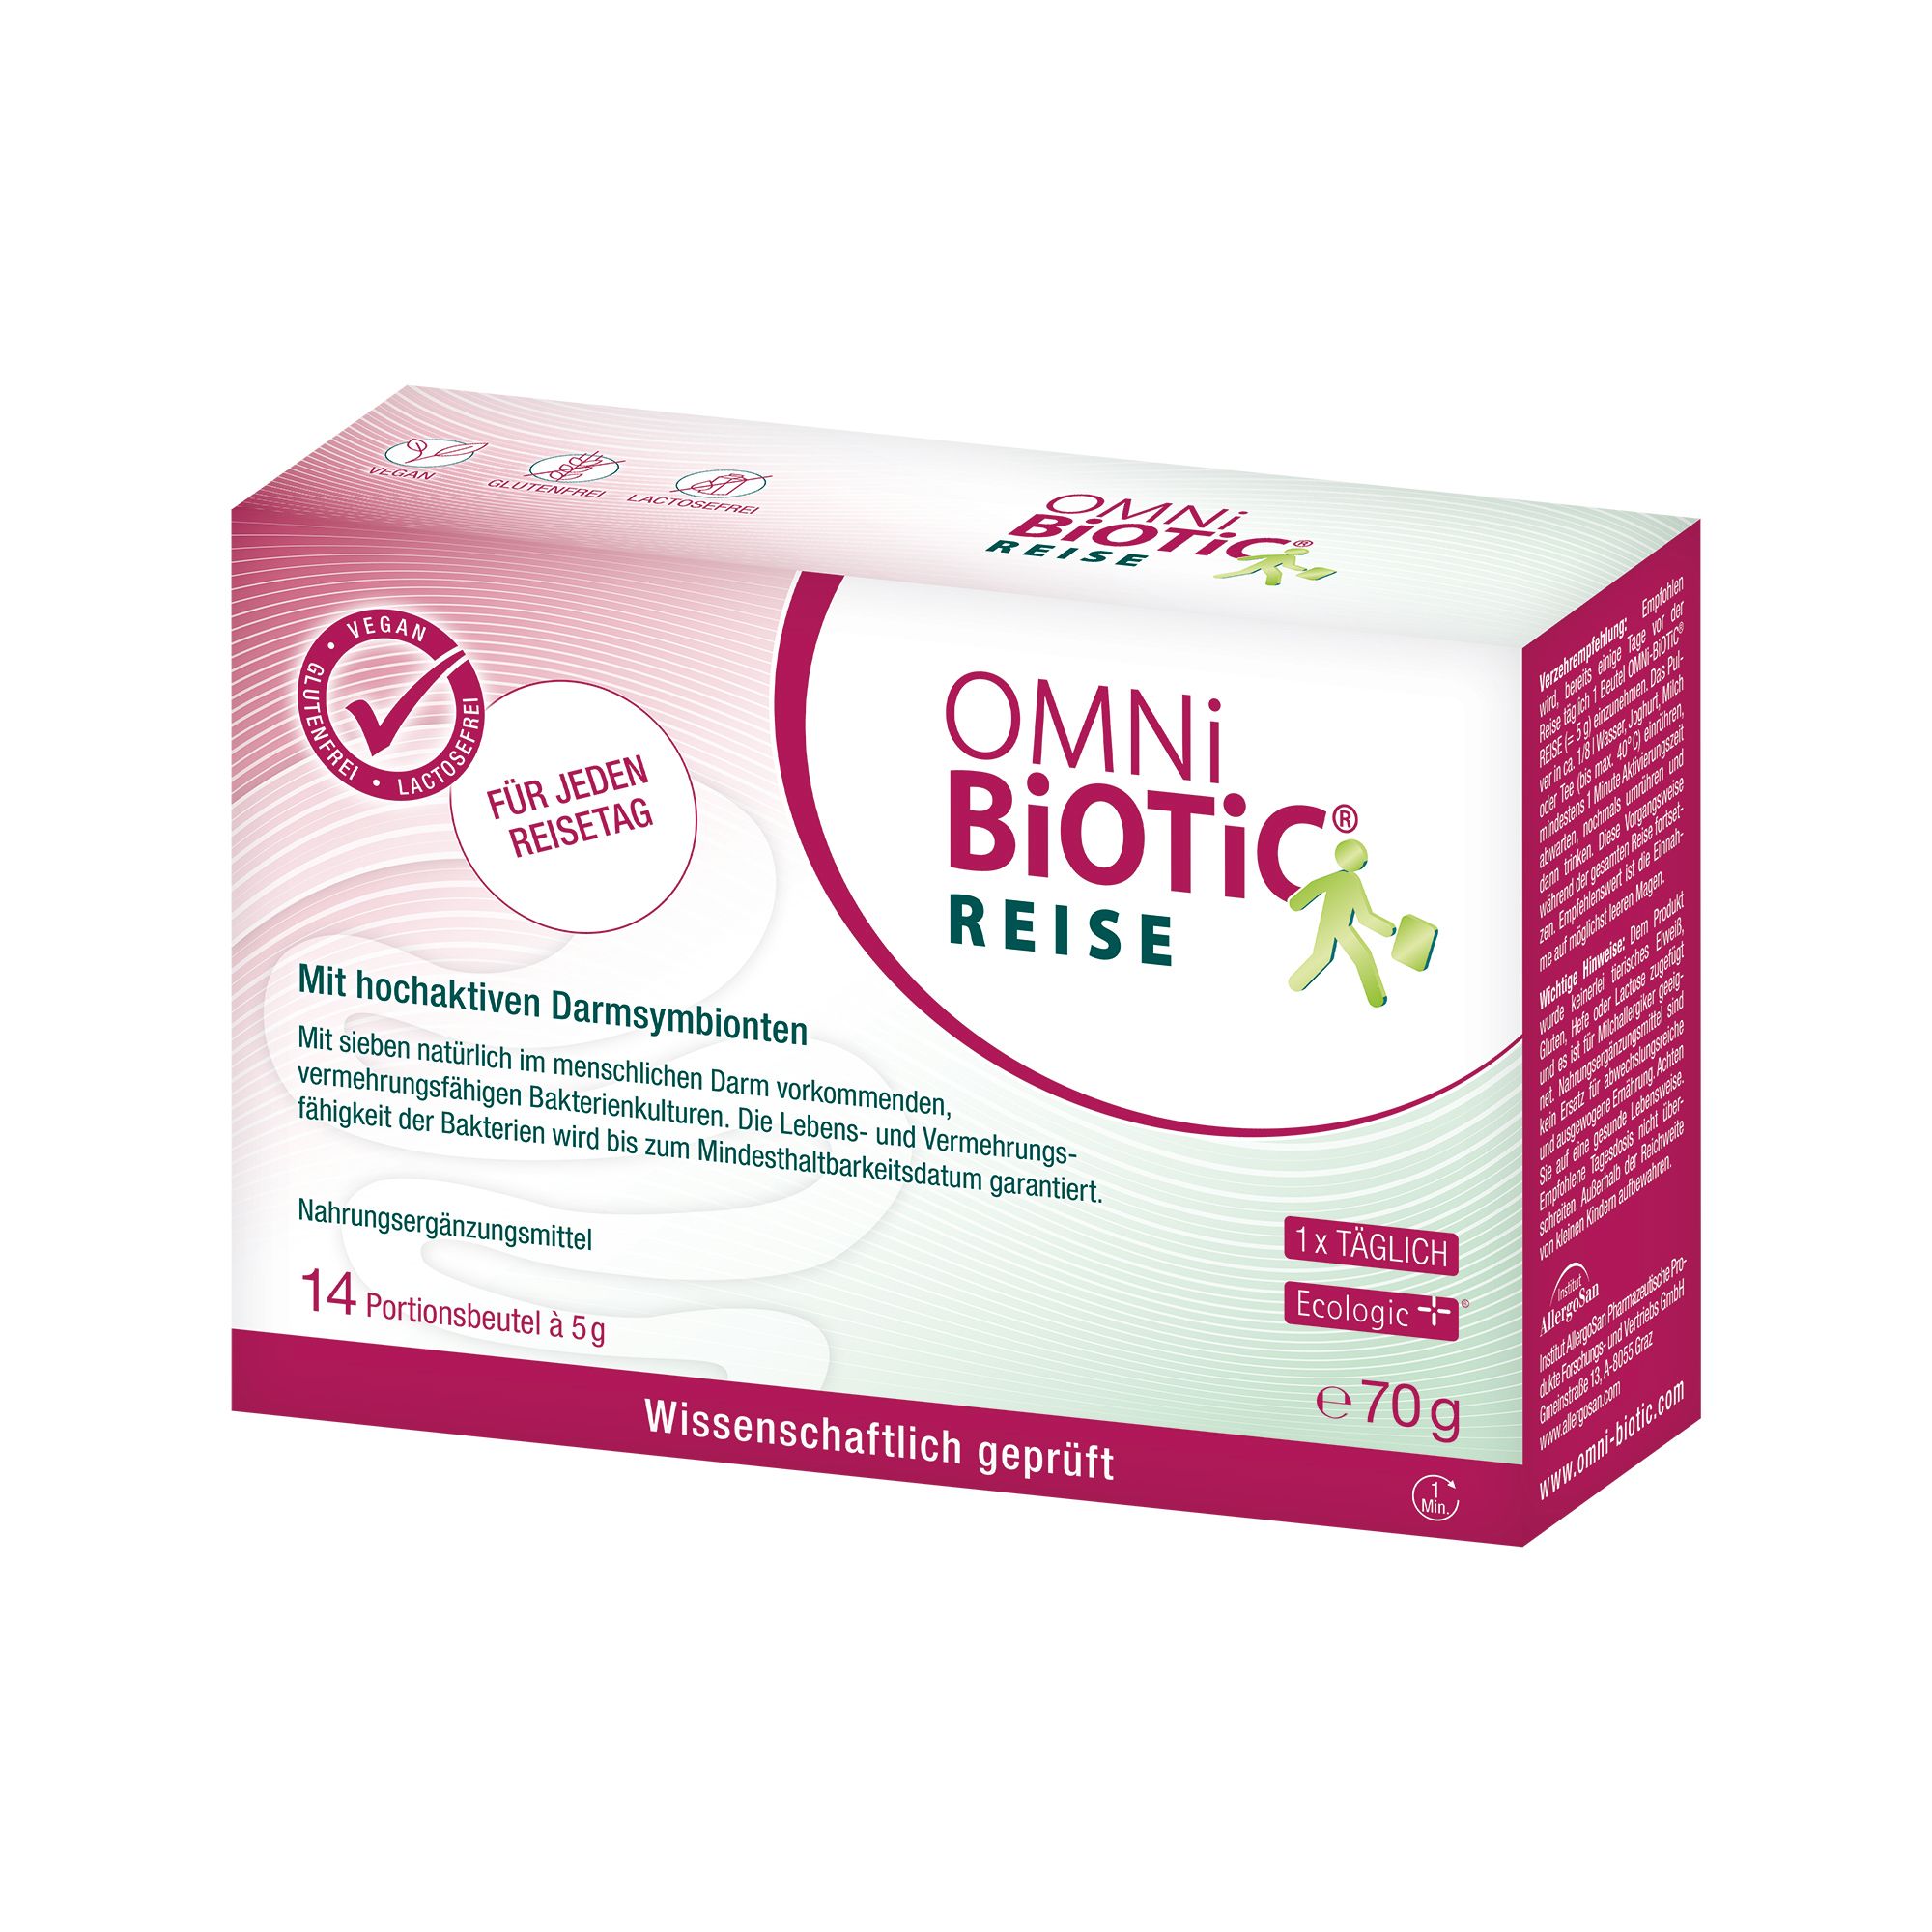 Image of OMNi-BiOTiC® REISE